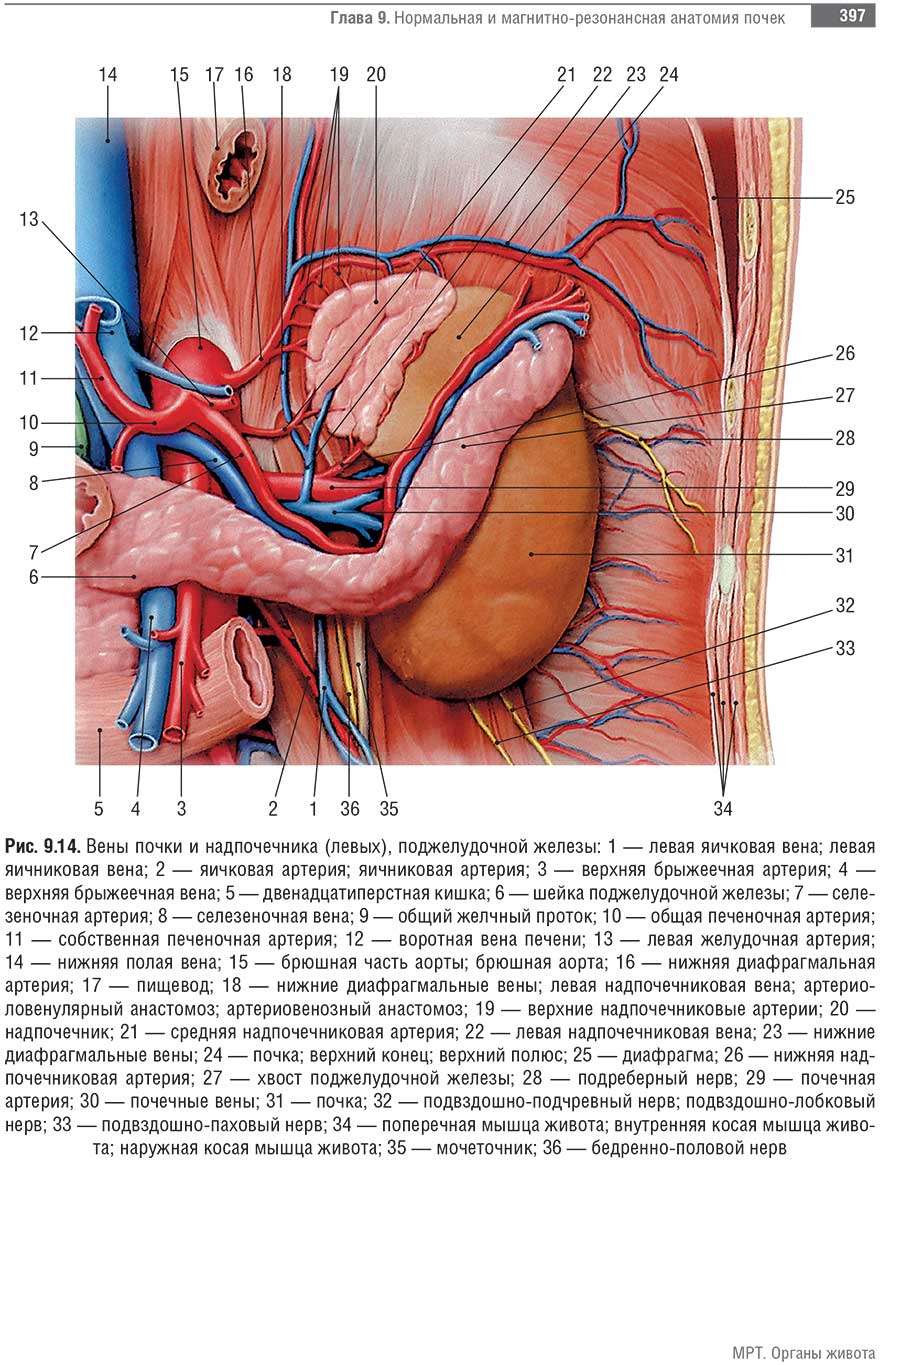 Вены почки и надпочечника (левых), поджелудочной железы